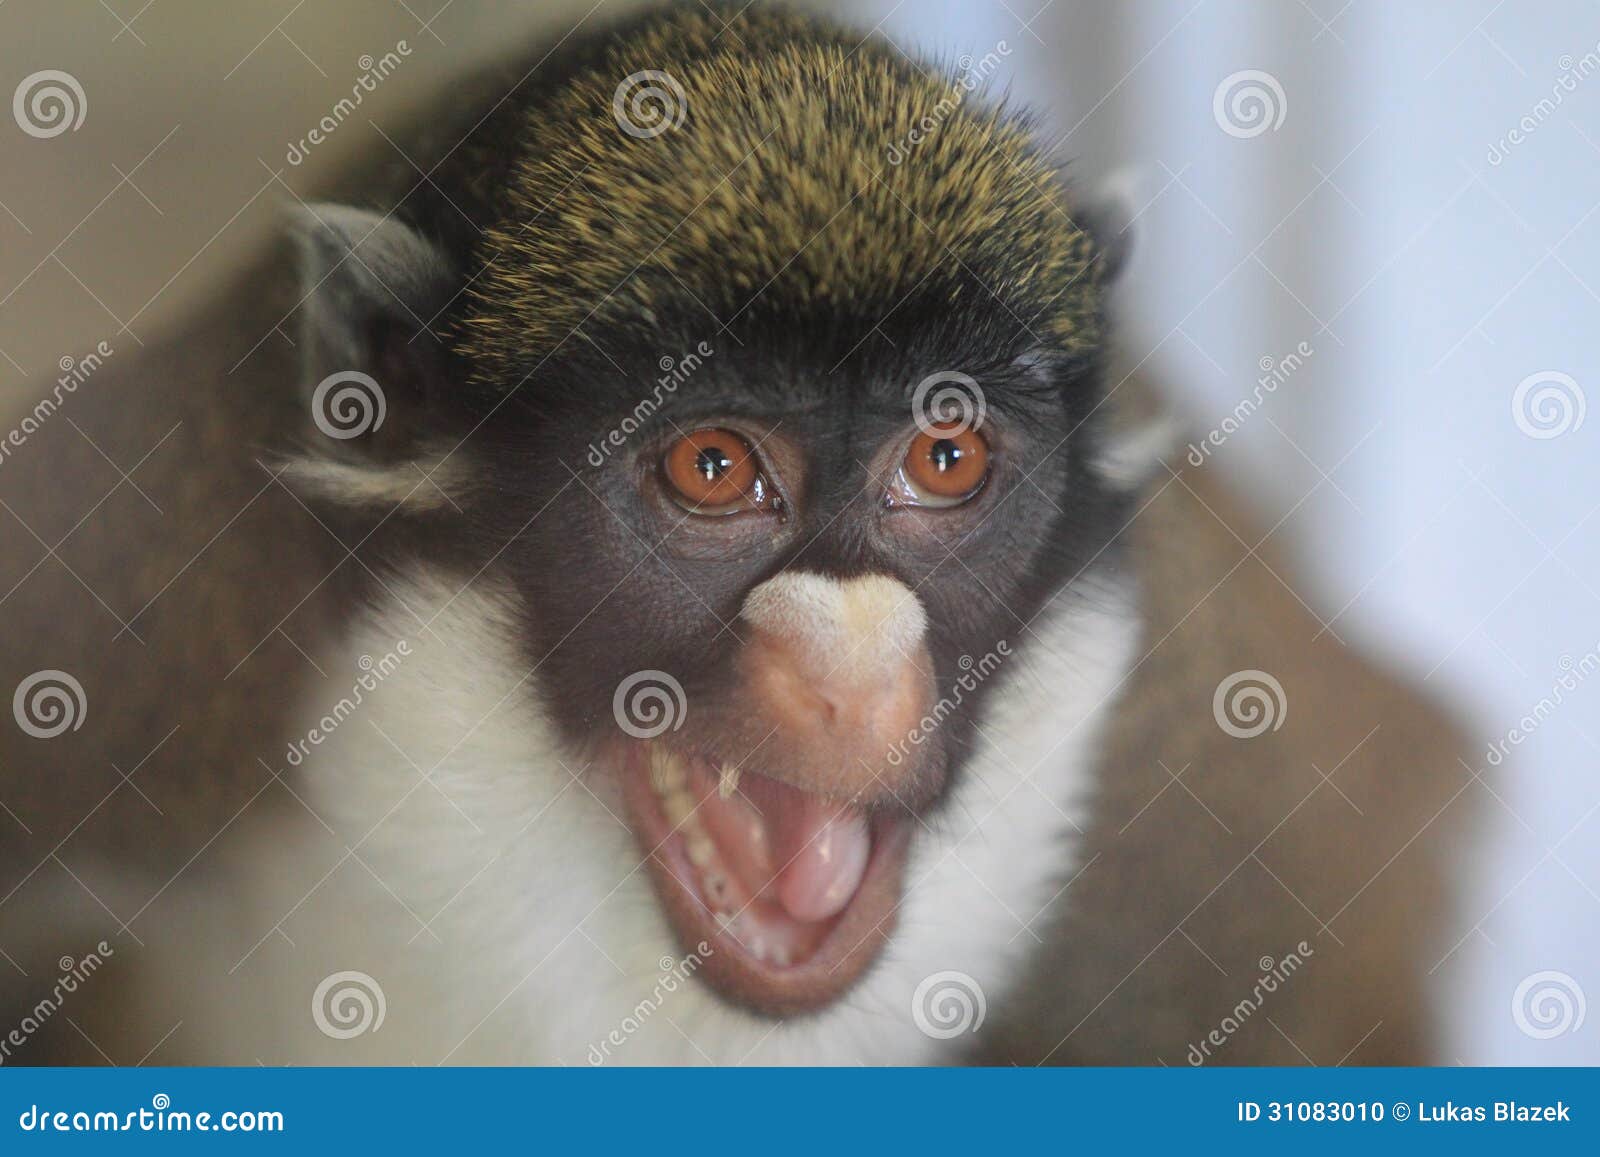 lesser white-nosed monkey